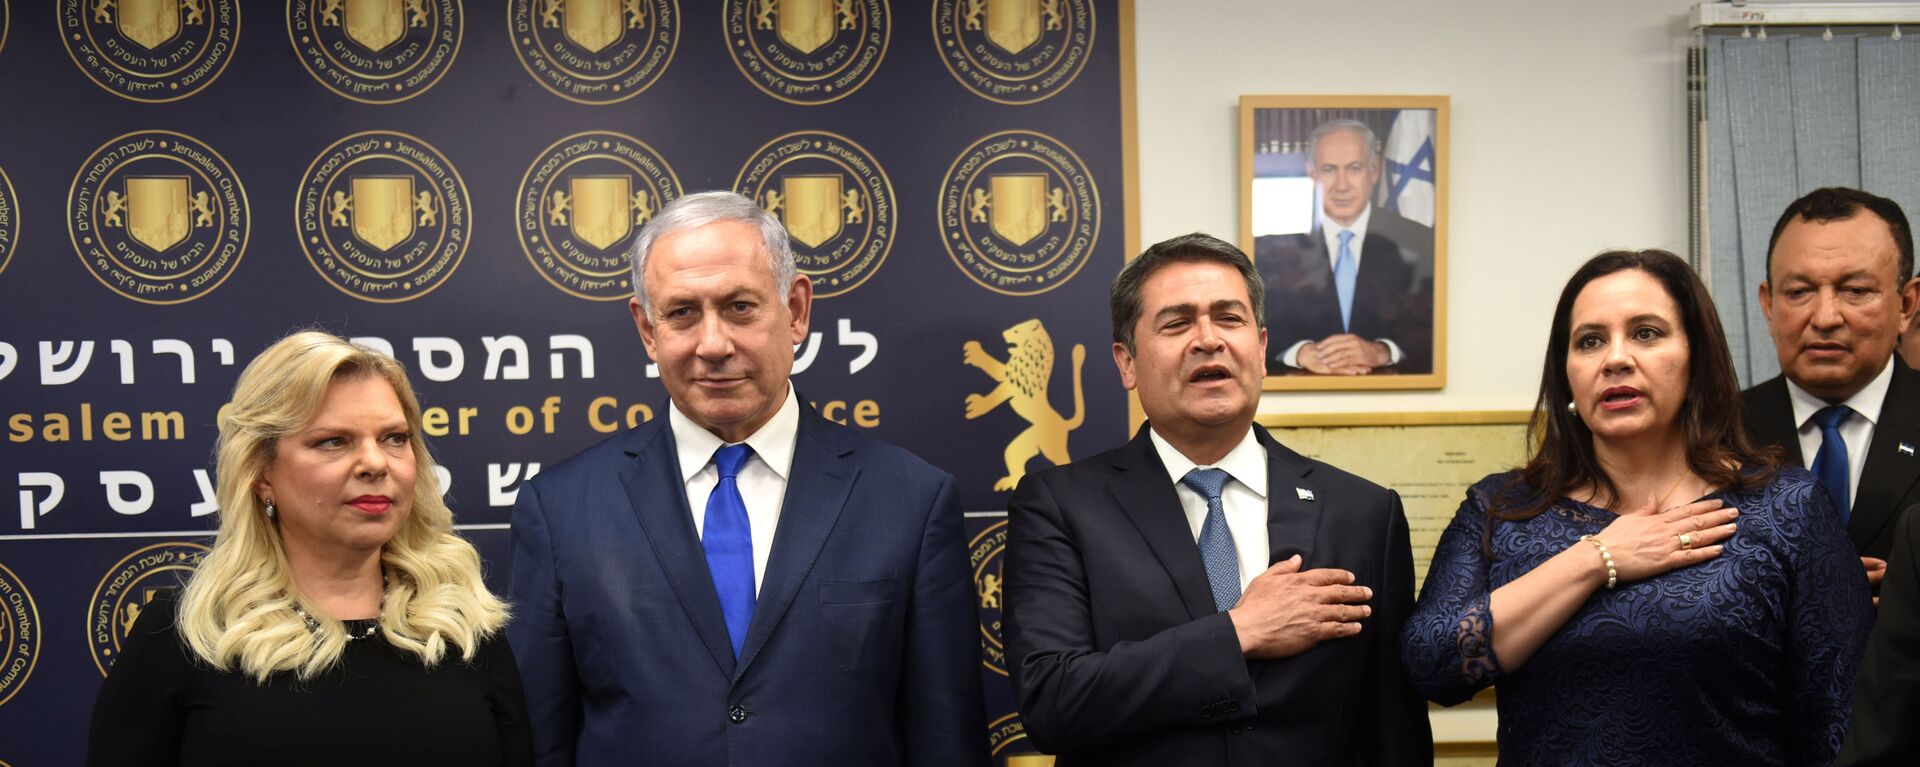 El primer ministro de Israel, Benjamín Netanyahu, y el presidente de Honduras, Juan Orlando Hernández, junto a sus mujeres - Sputnik Mundo, 1920, 01.09.2019